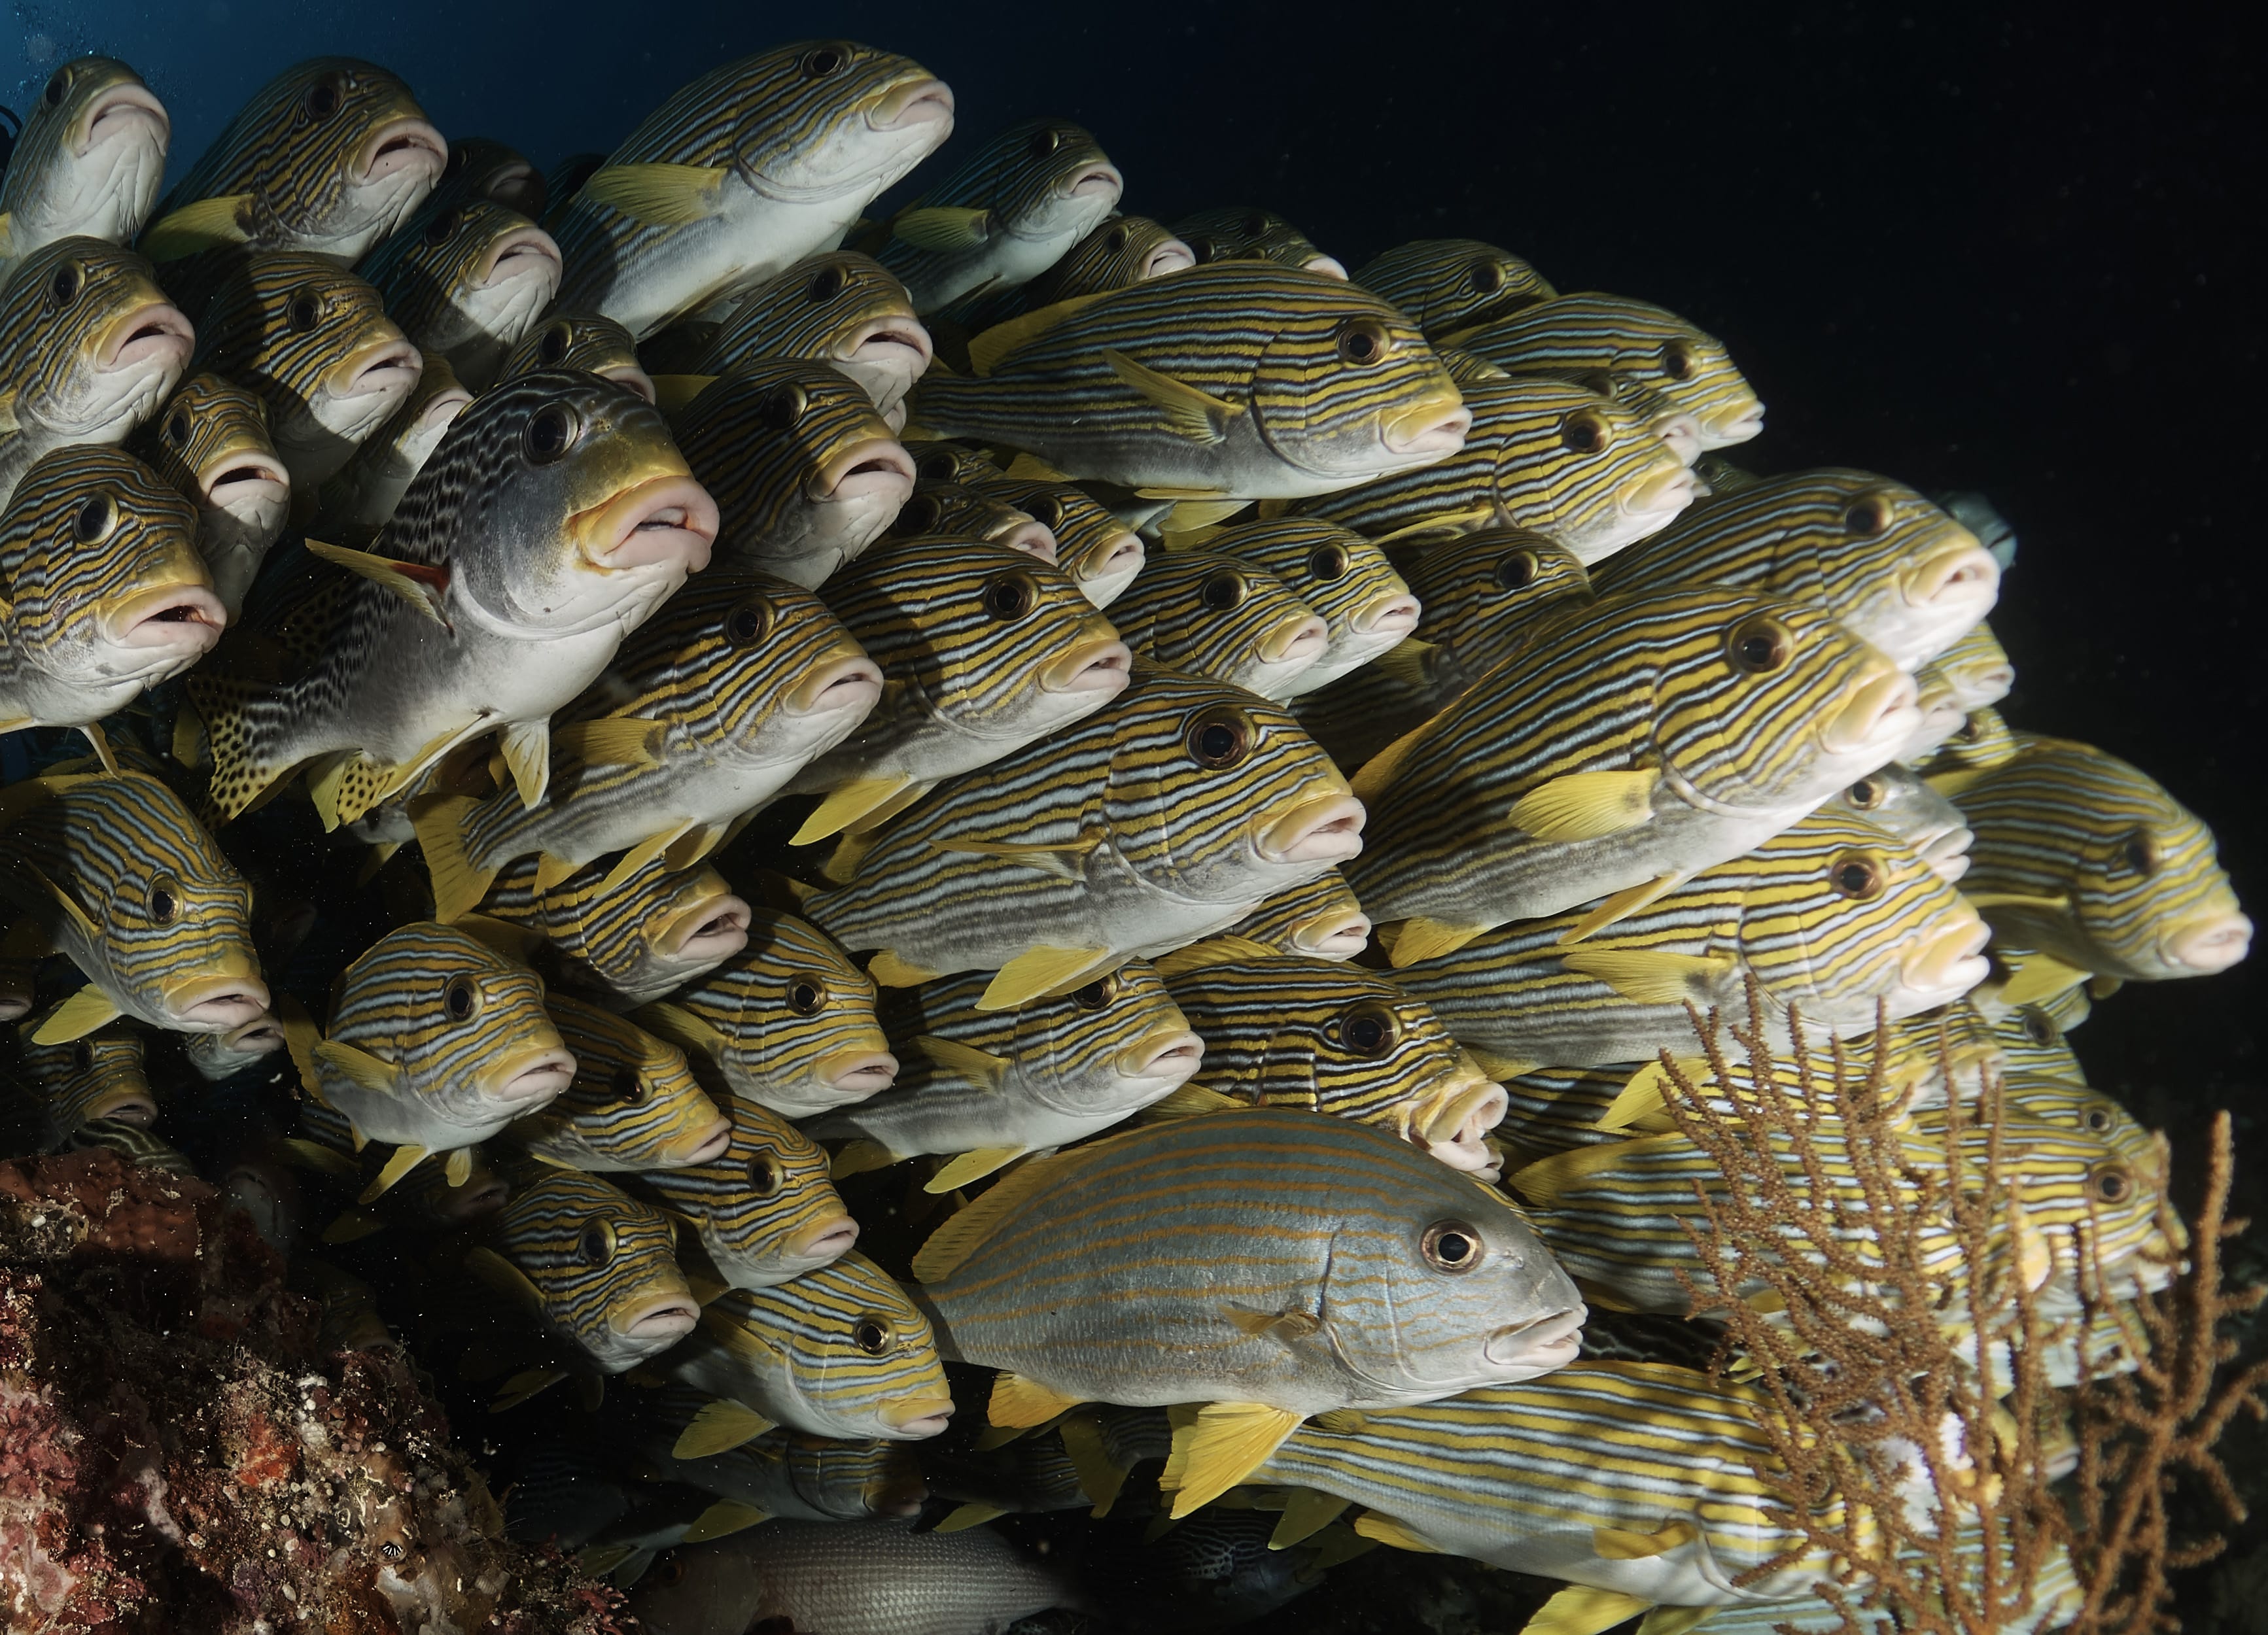 Underwater view of school of fish.